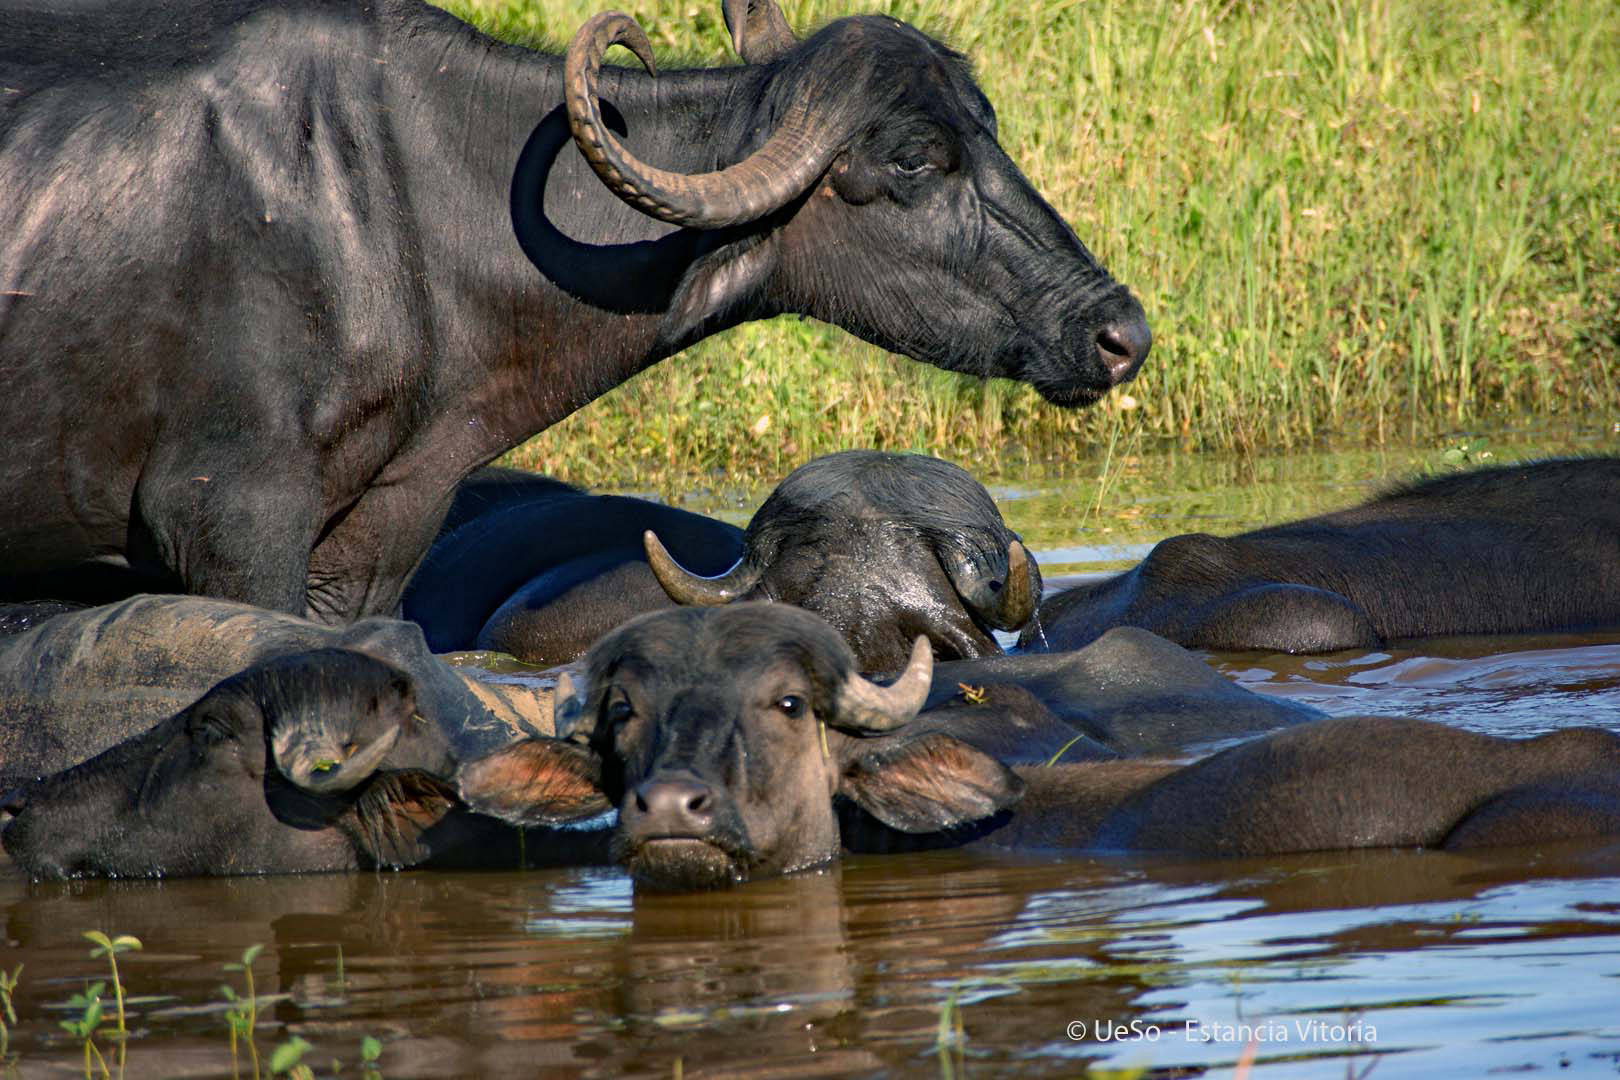 Water buffalos in the Pantanal